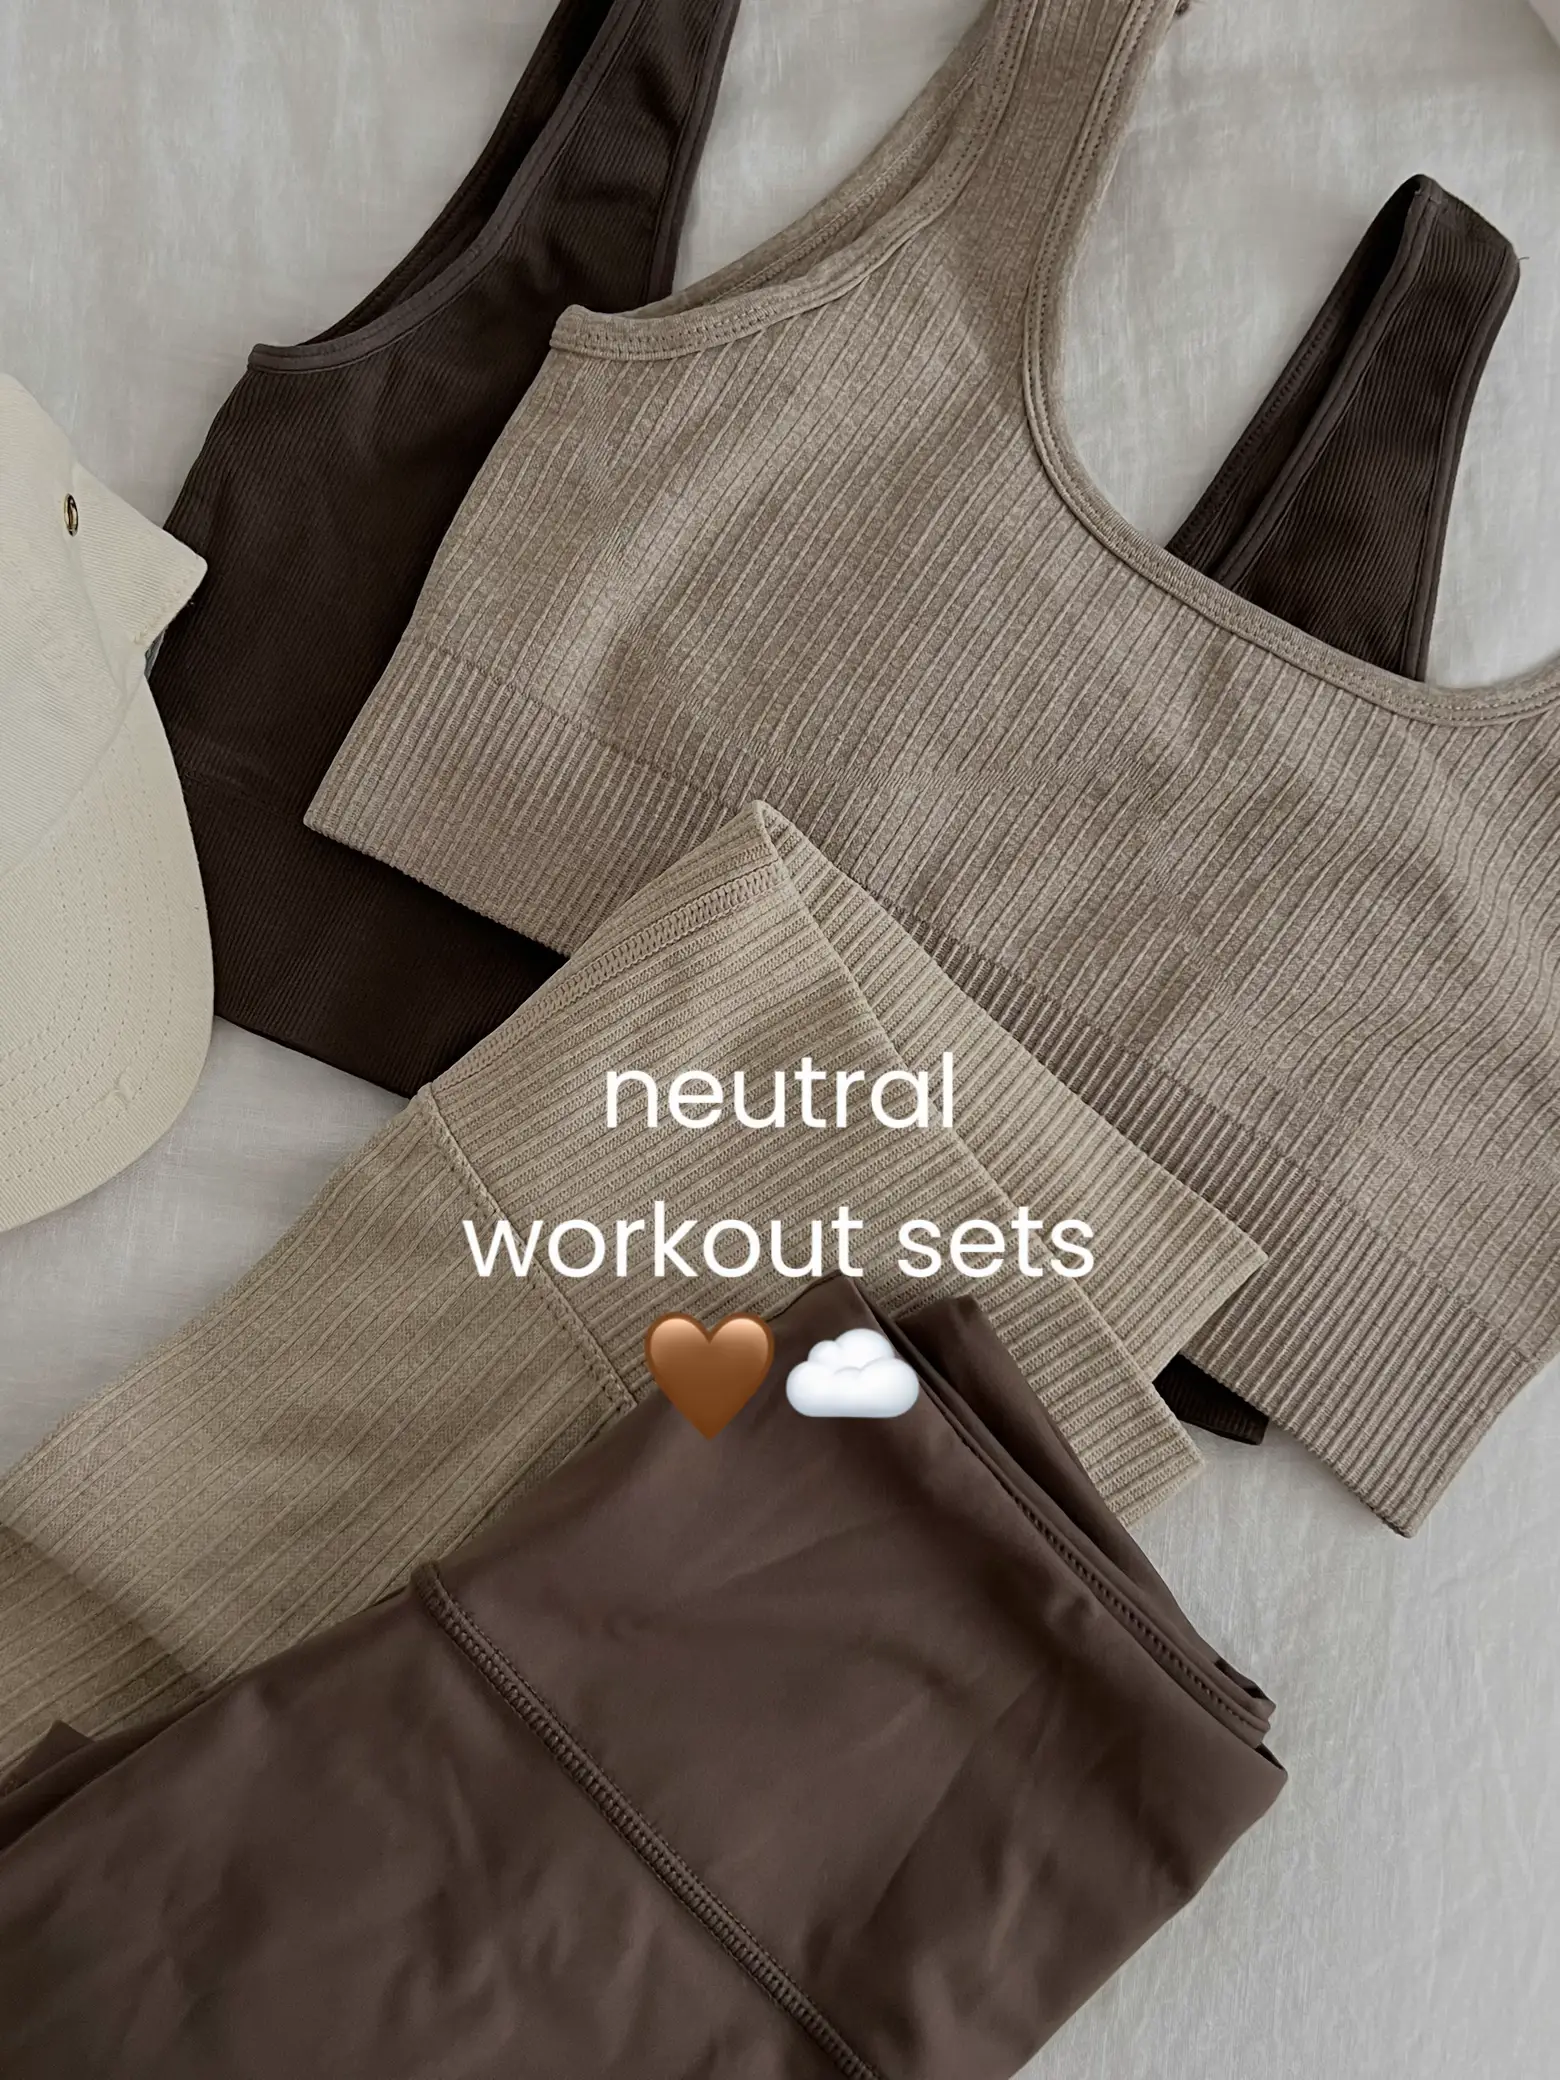 neutral gym wear - Lemon8 Search